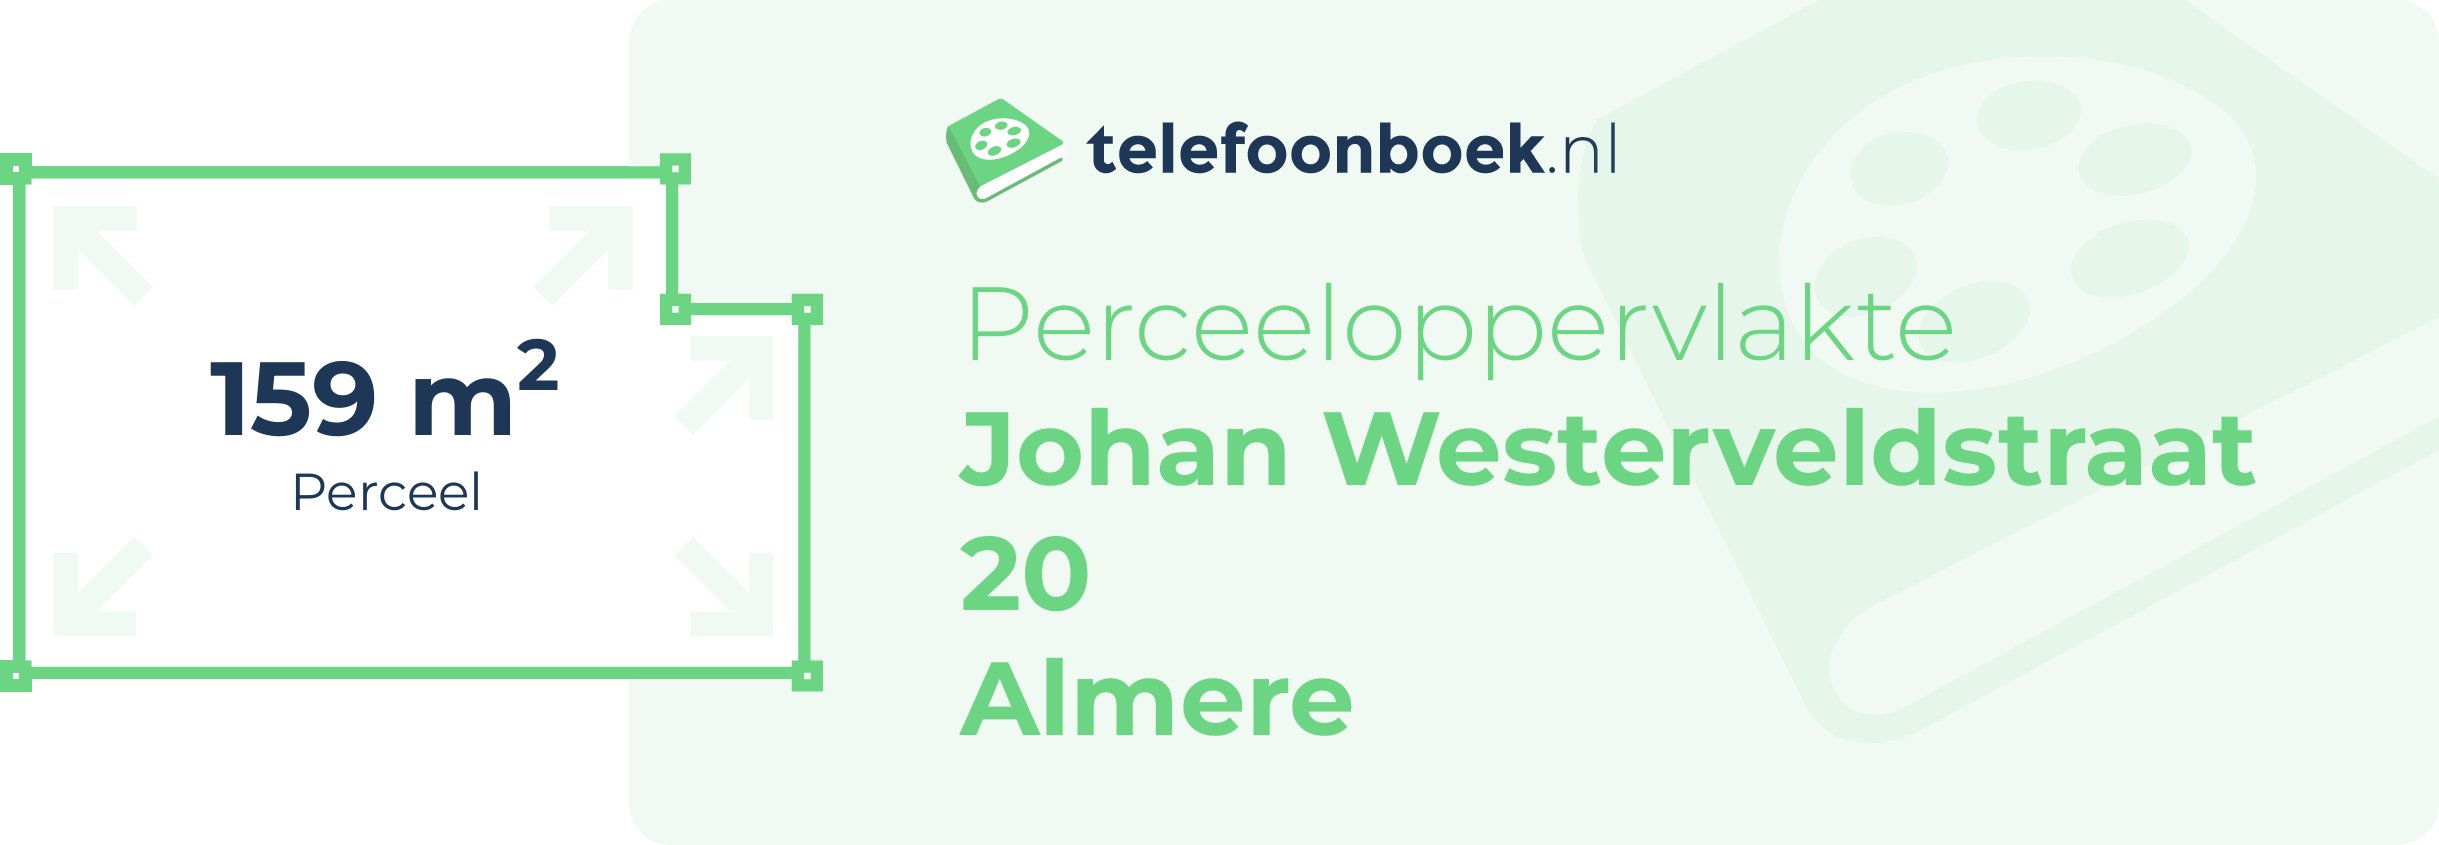 Perceeloppervlakte Johan Westerveldstraat 20 Almere